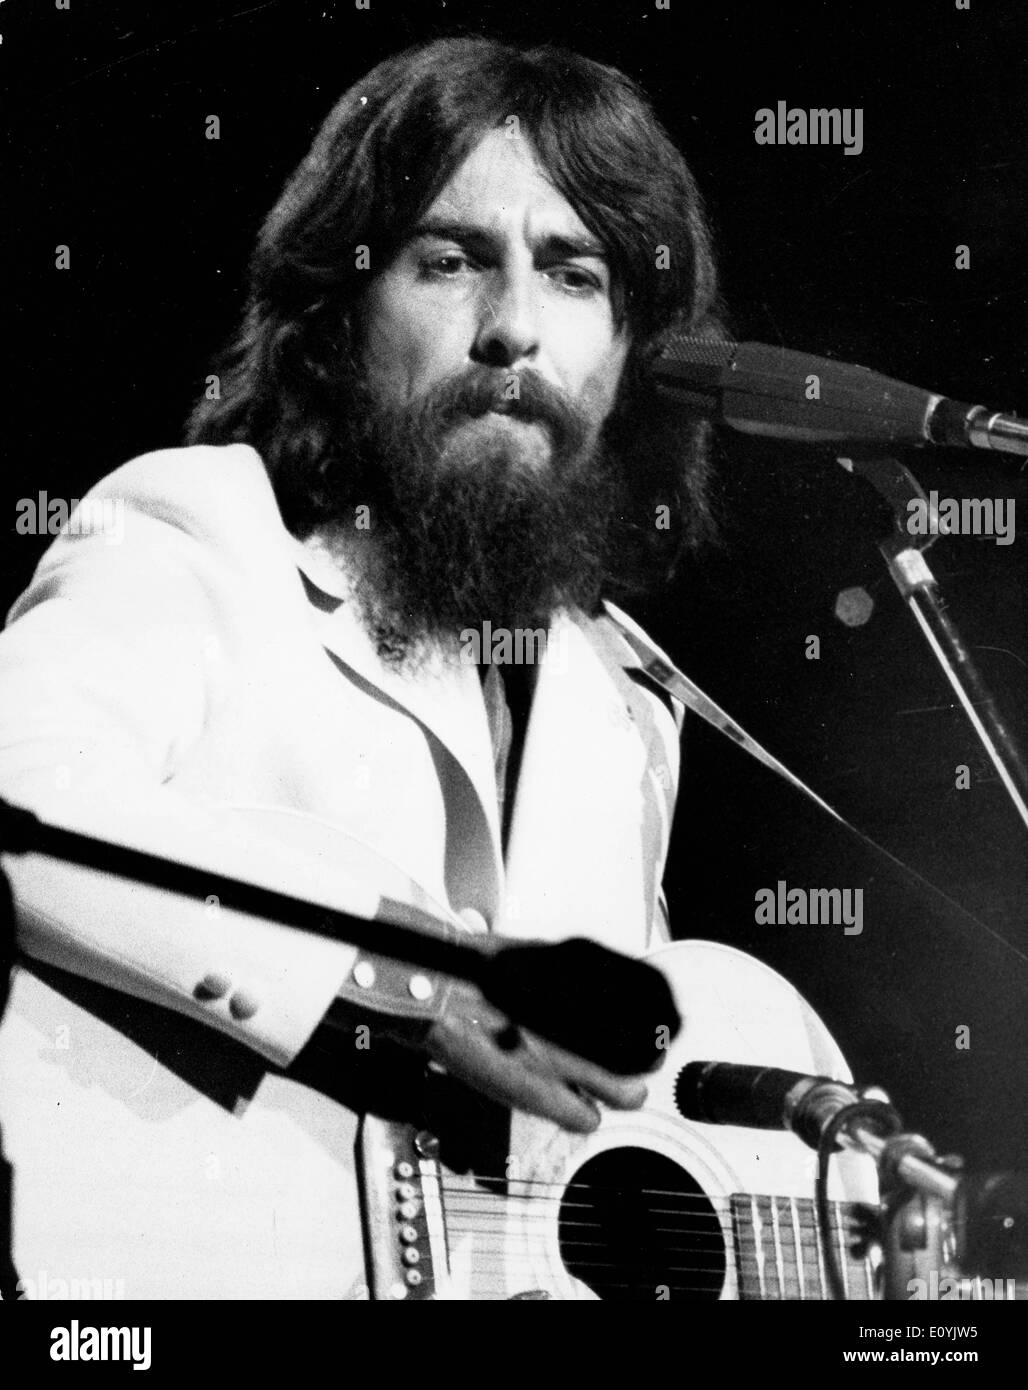 Le guitariste des Beatles George Harrison se produit en concert Photo Stock  - Alamy